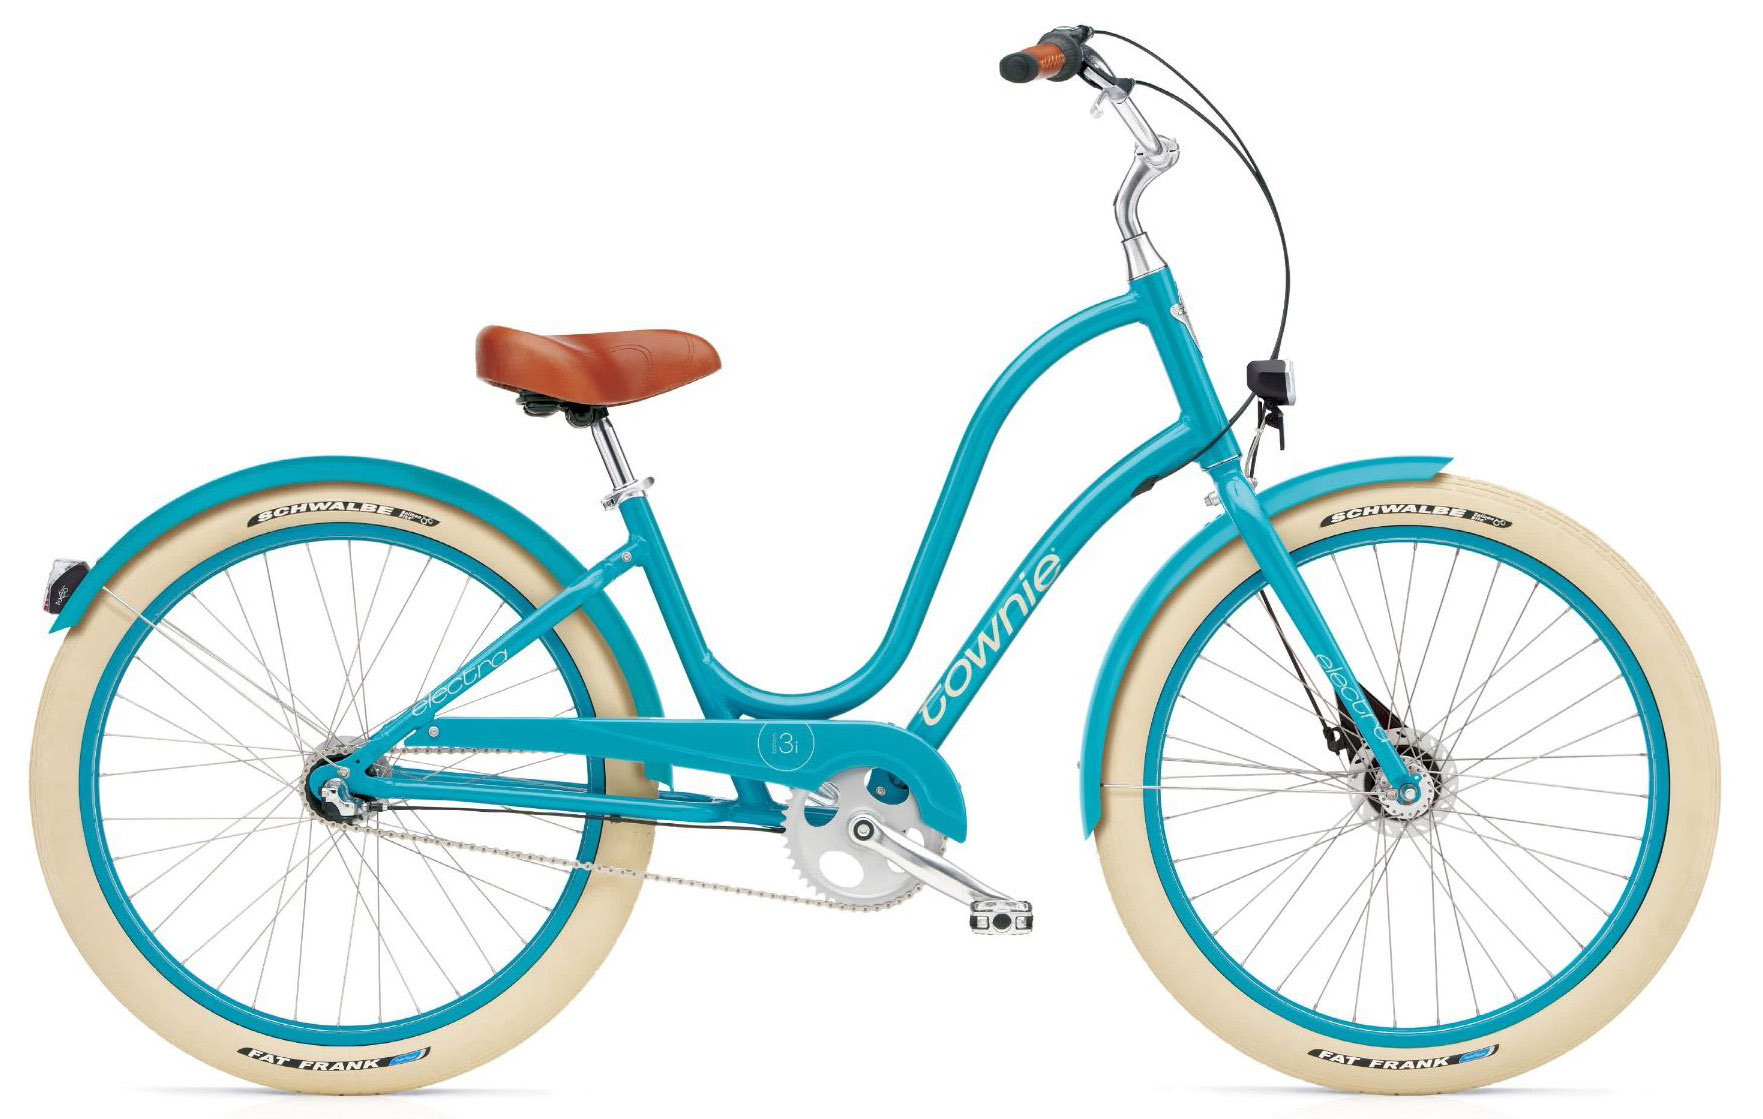  Отзывы о Женском велосипеде Electra Townie Balloon 7i EQ Ladies 2020